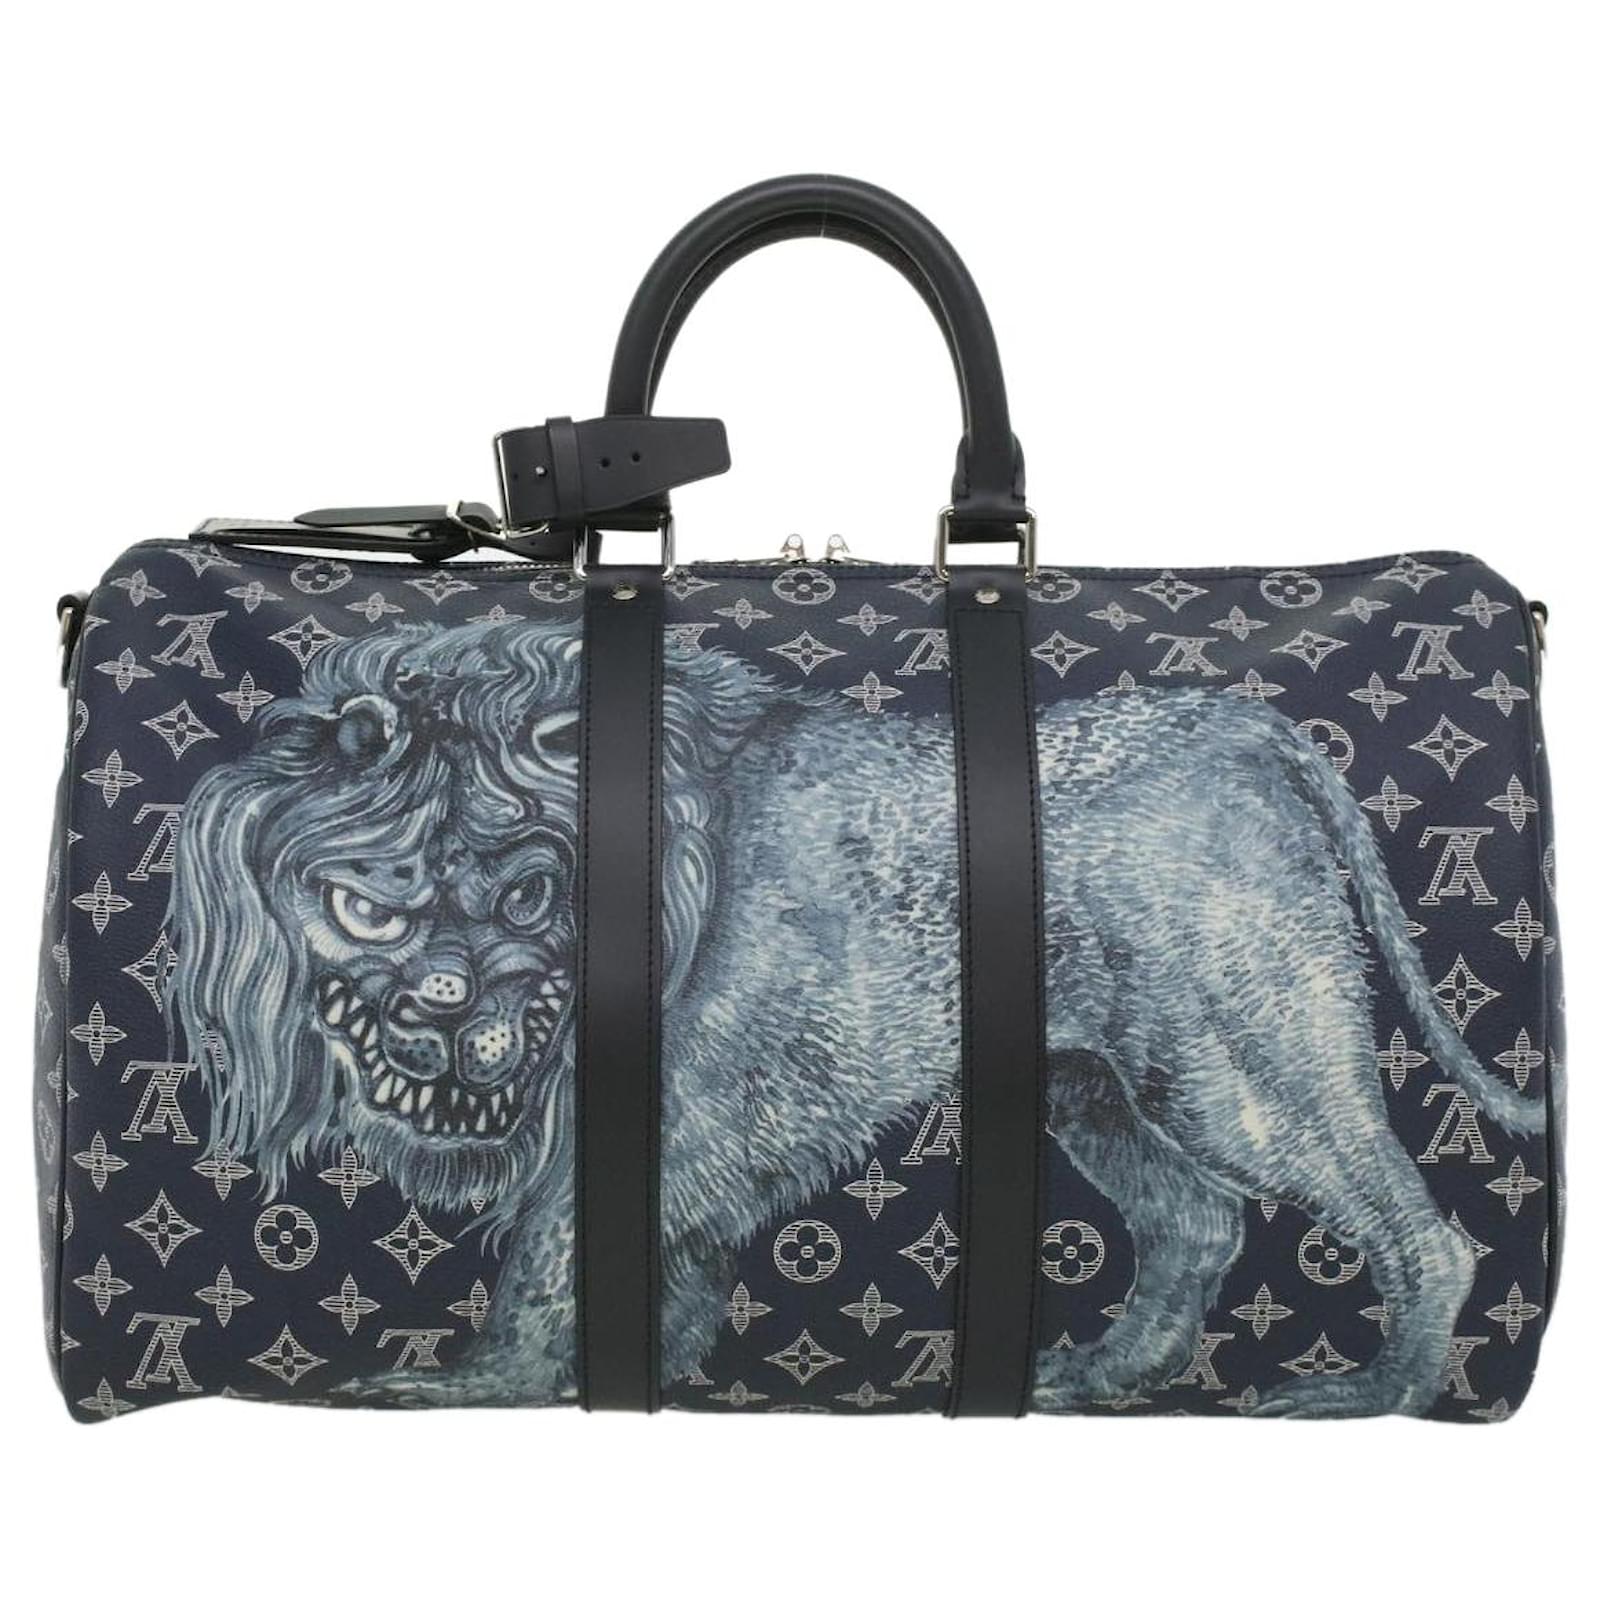 Handbags Louis Vuitton Louis Vuitton Damier Azur Keepall Bandouliere 45 Boston Bag N48223 Auth 32852a